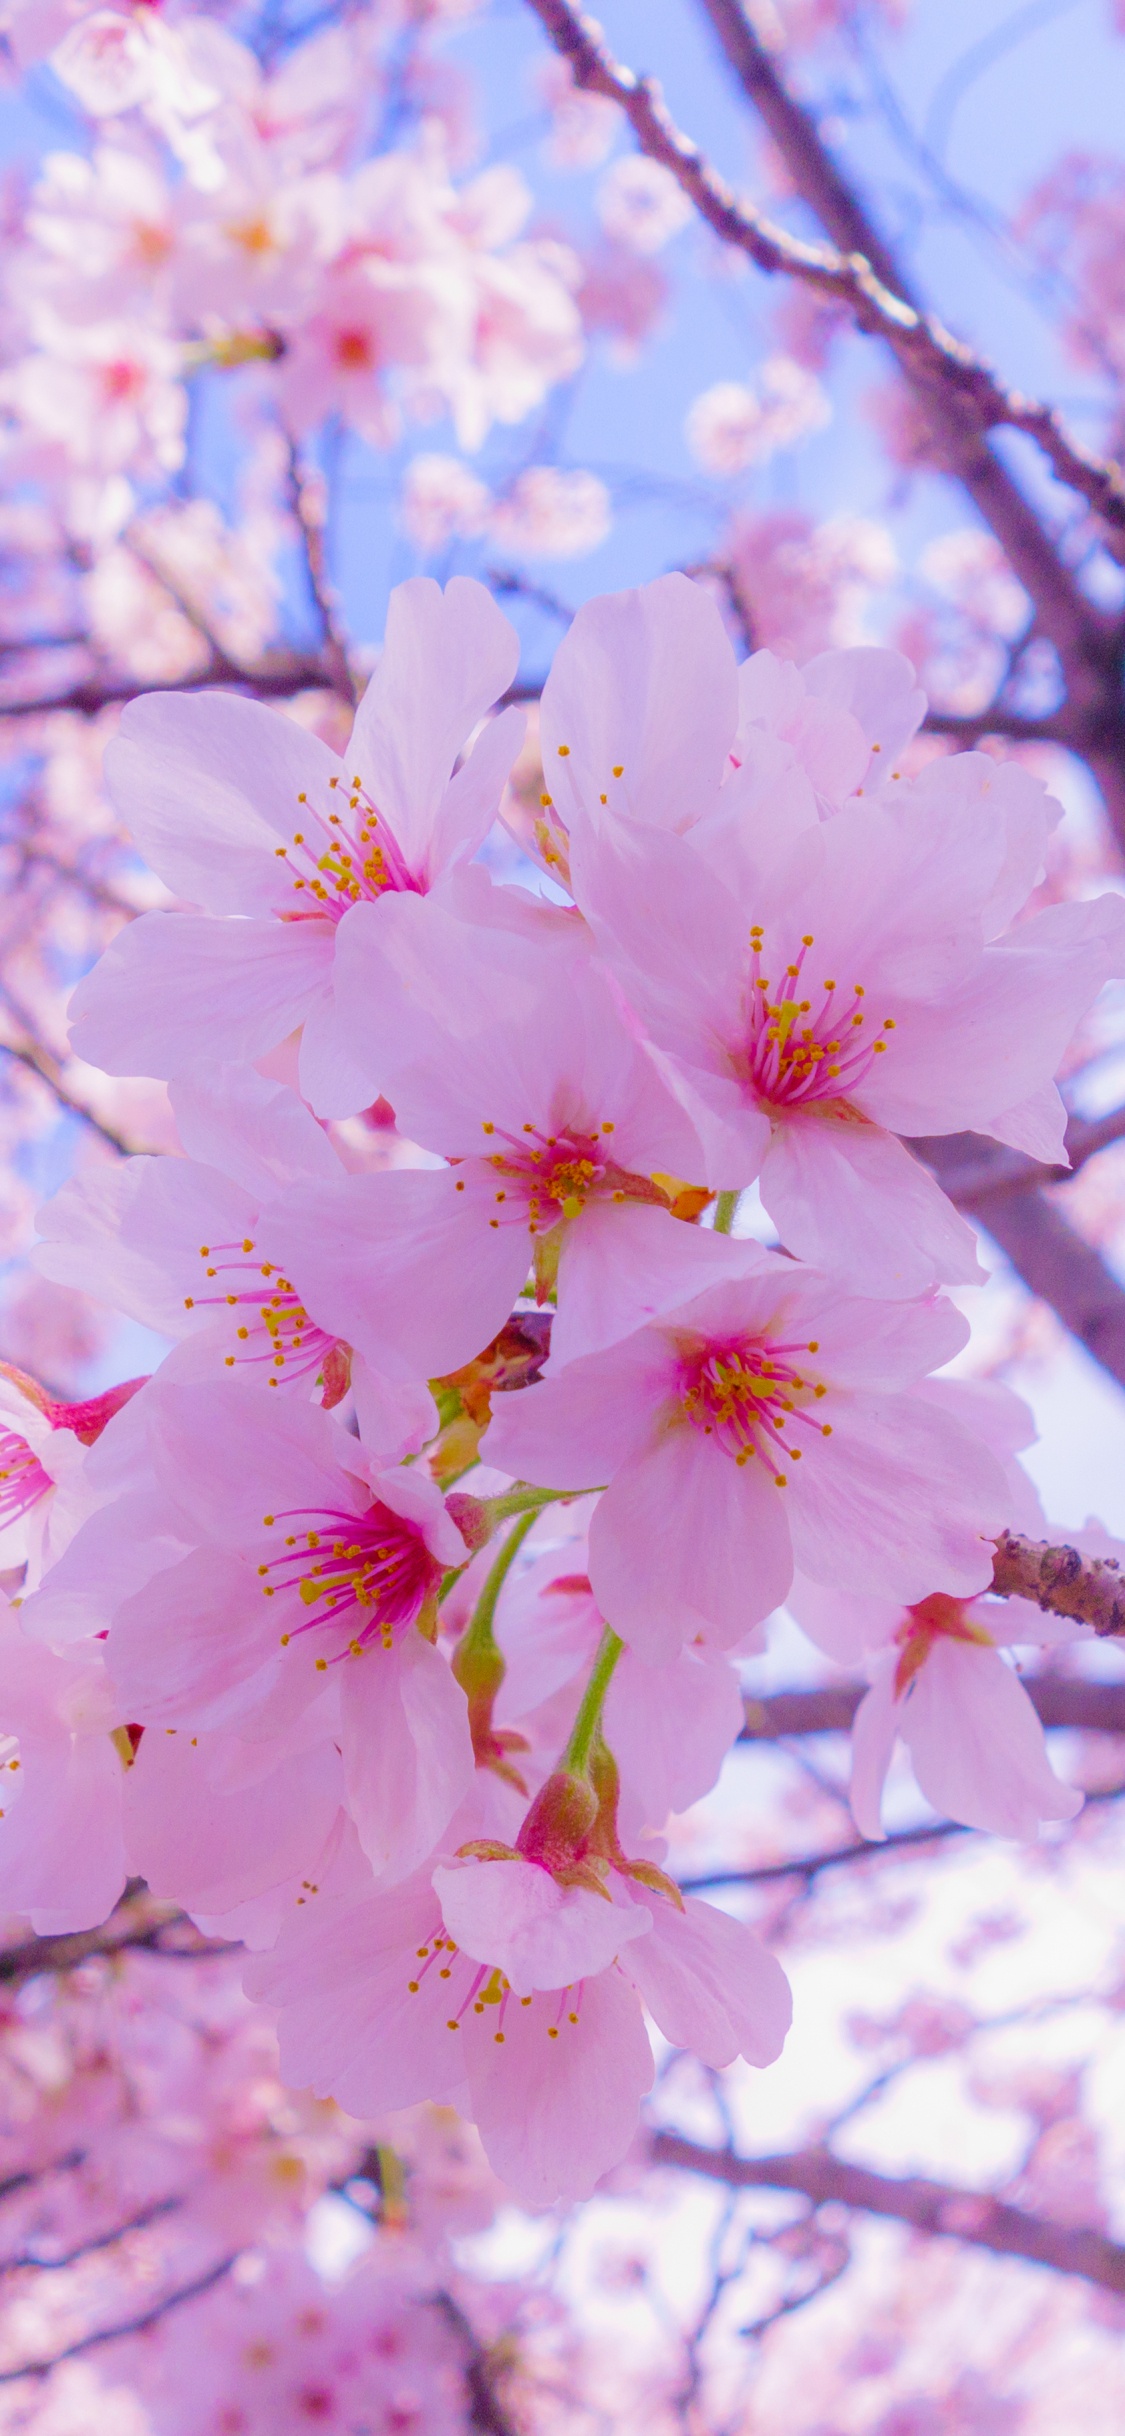 Arbre de Fleurs de Cerisier Rose Pendant la Journée. Wallpaper in 1125x2436 Resolution